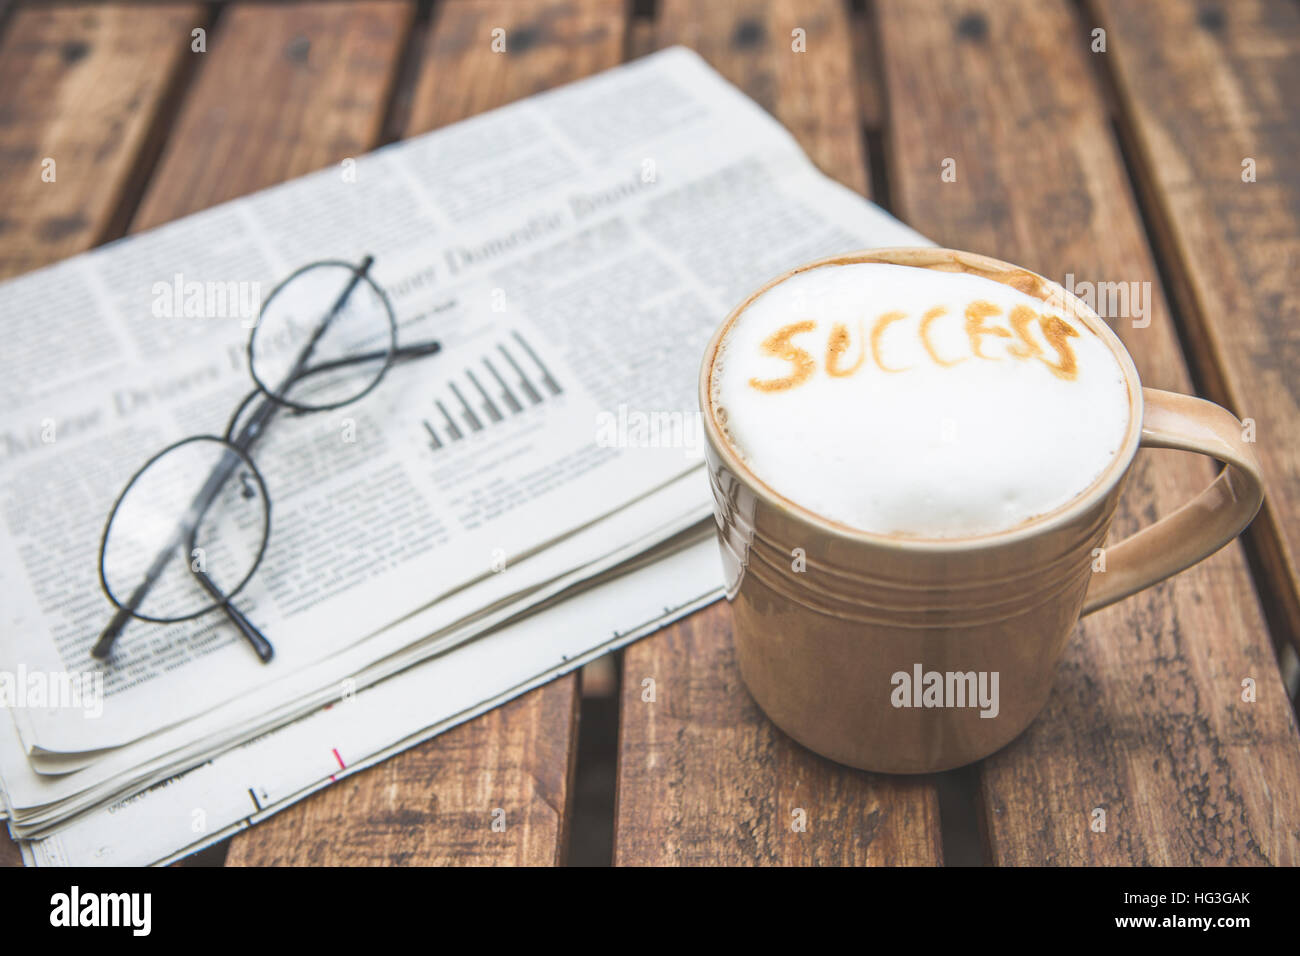 Tazza di caffè con una formulazione ' successo' e bicchieri sul giornale aziendale Foto Stock